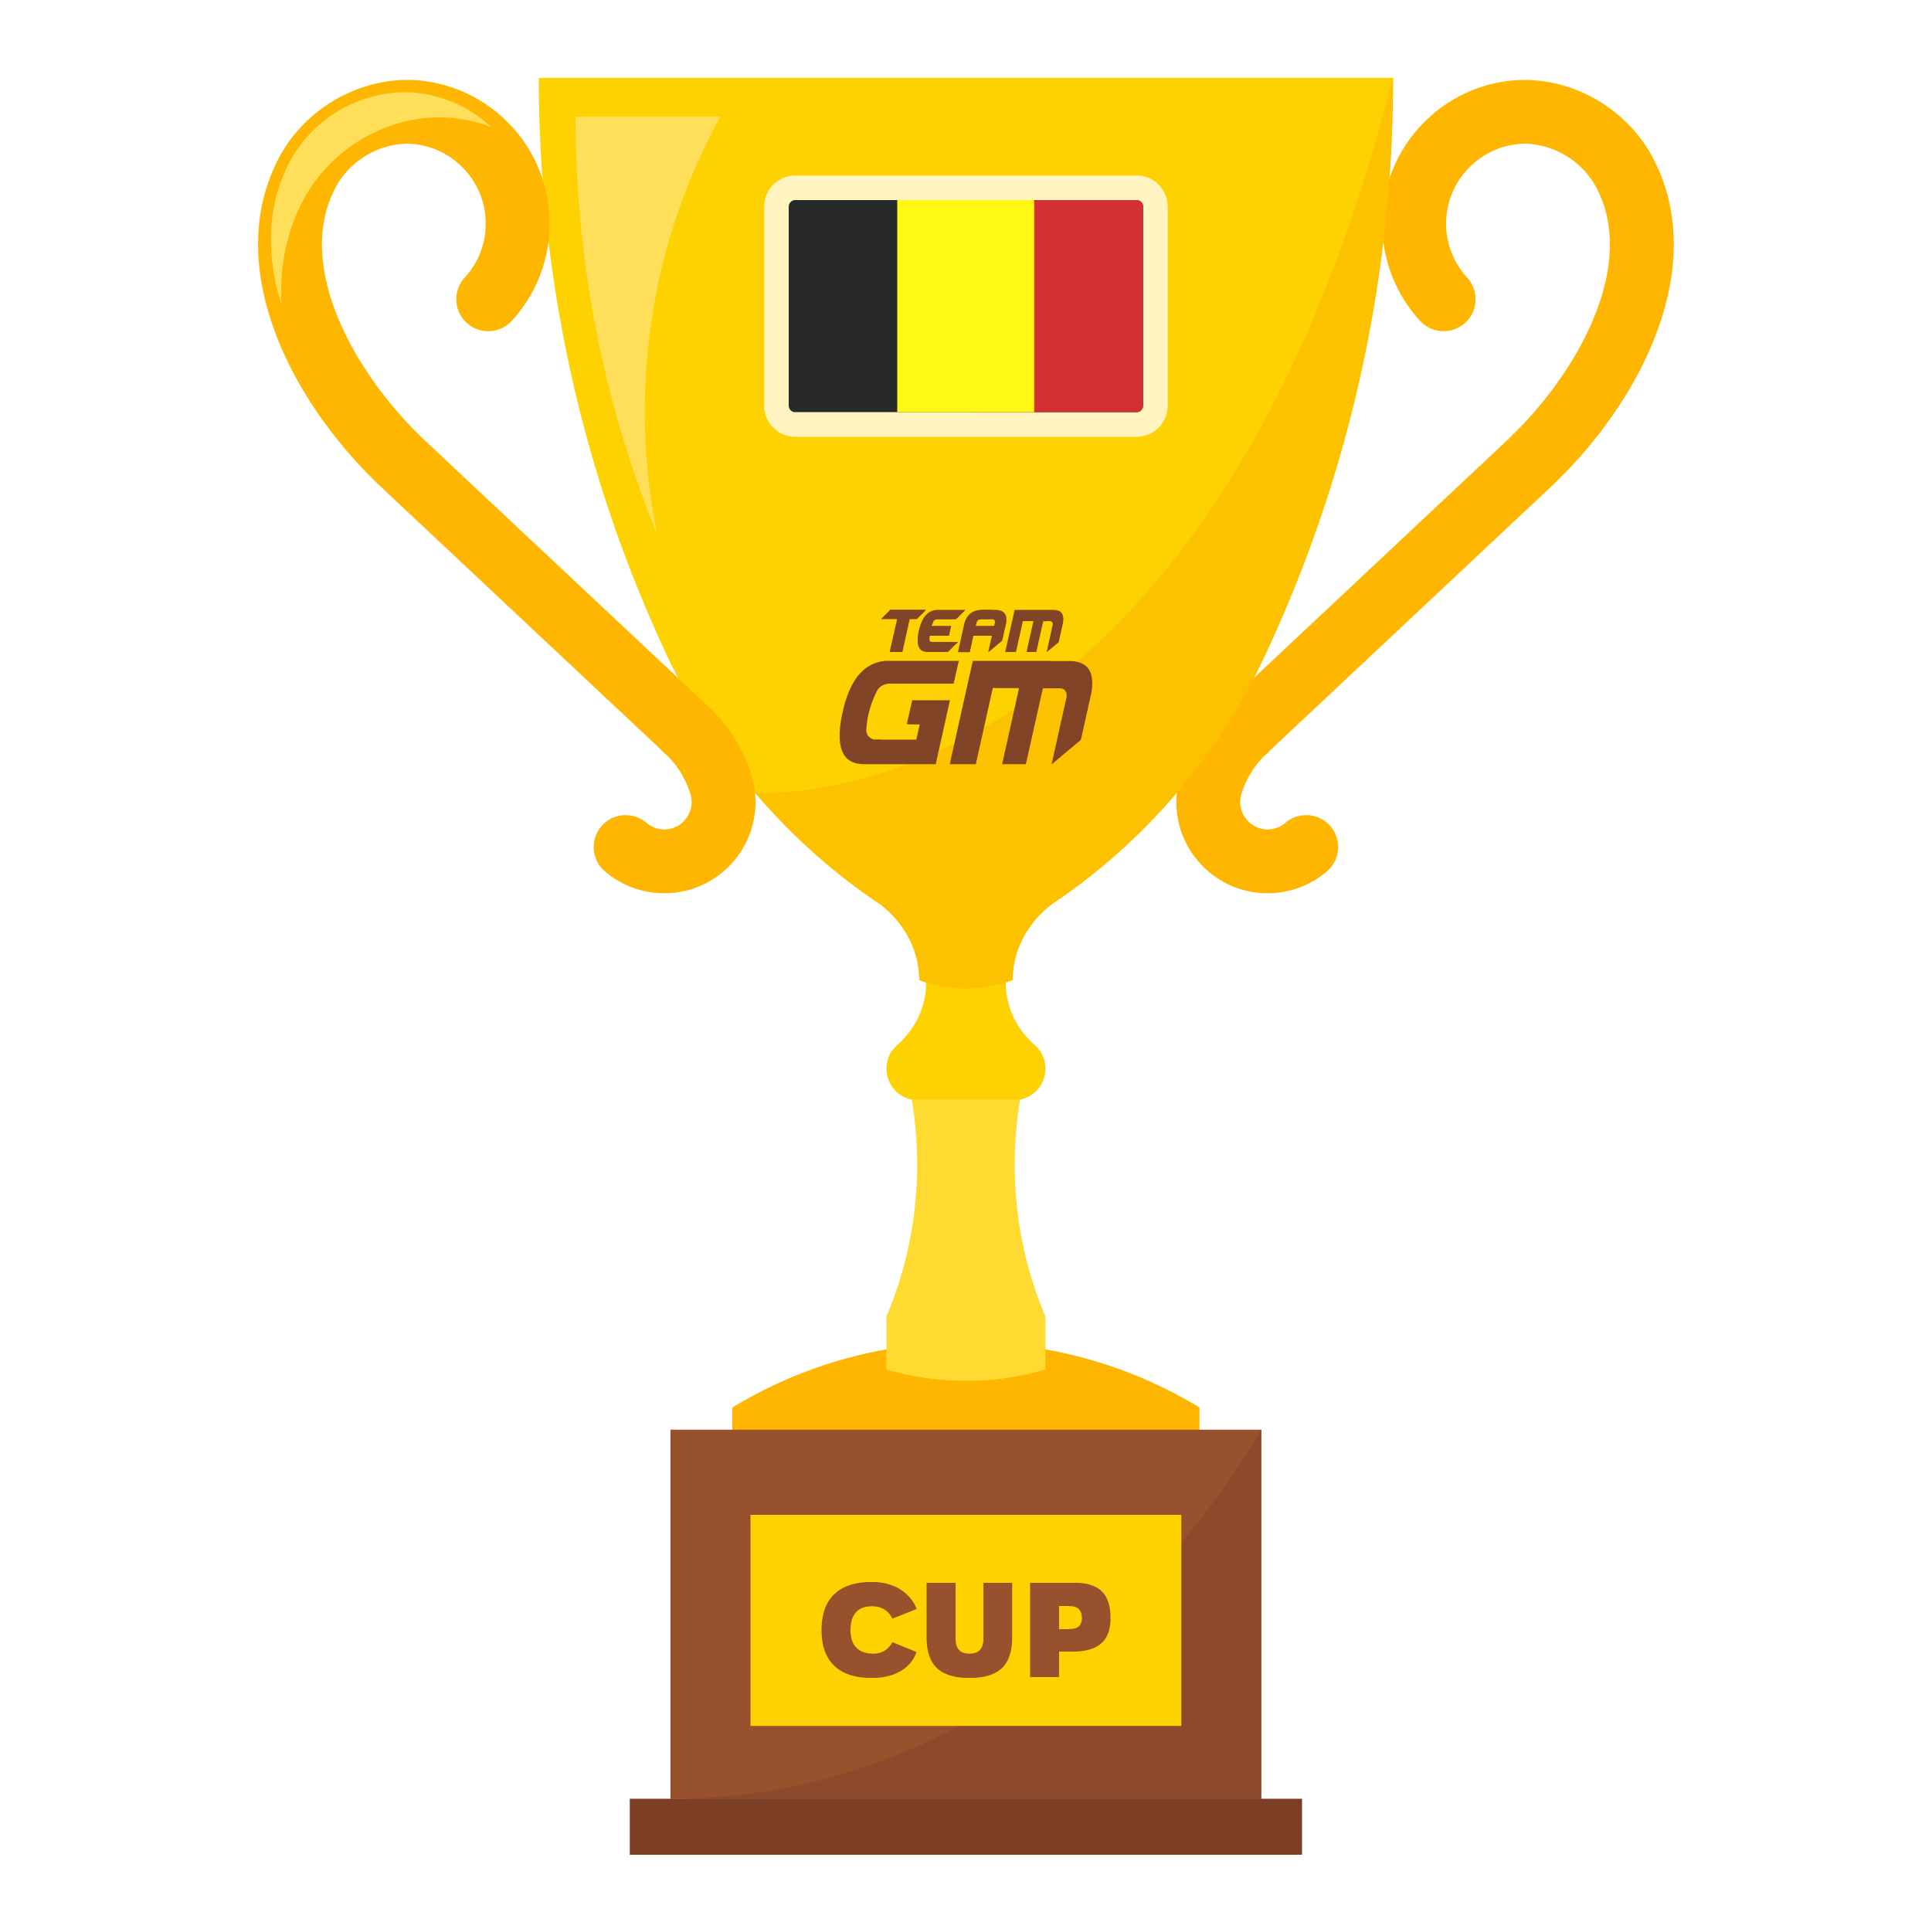 1ST - BELGIUM CUP